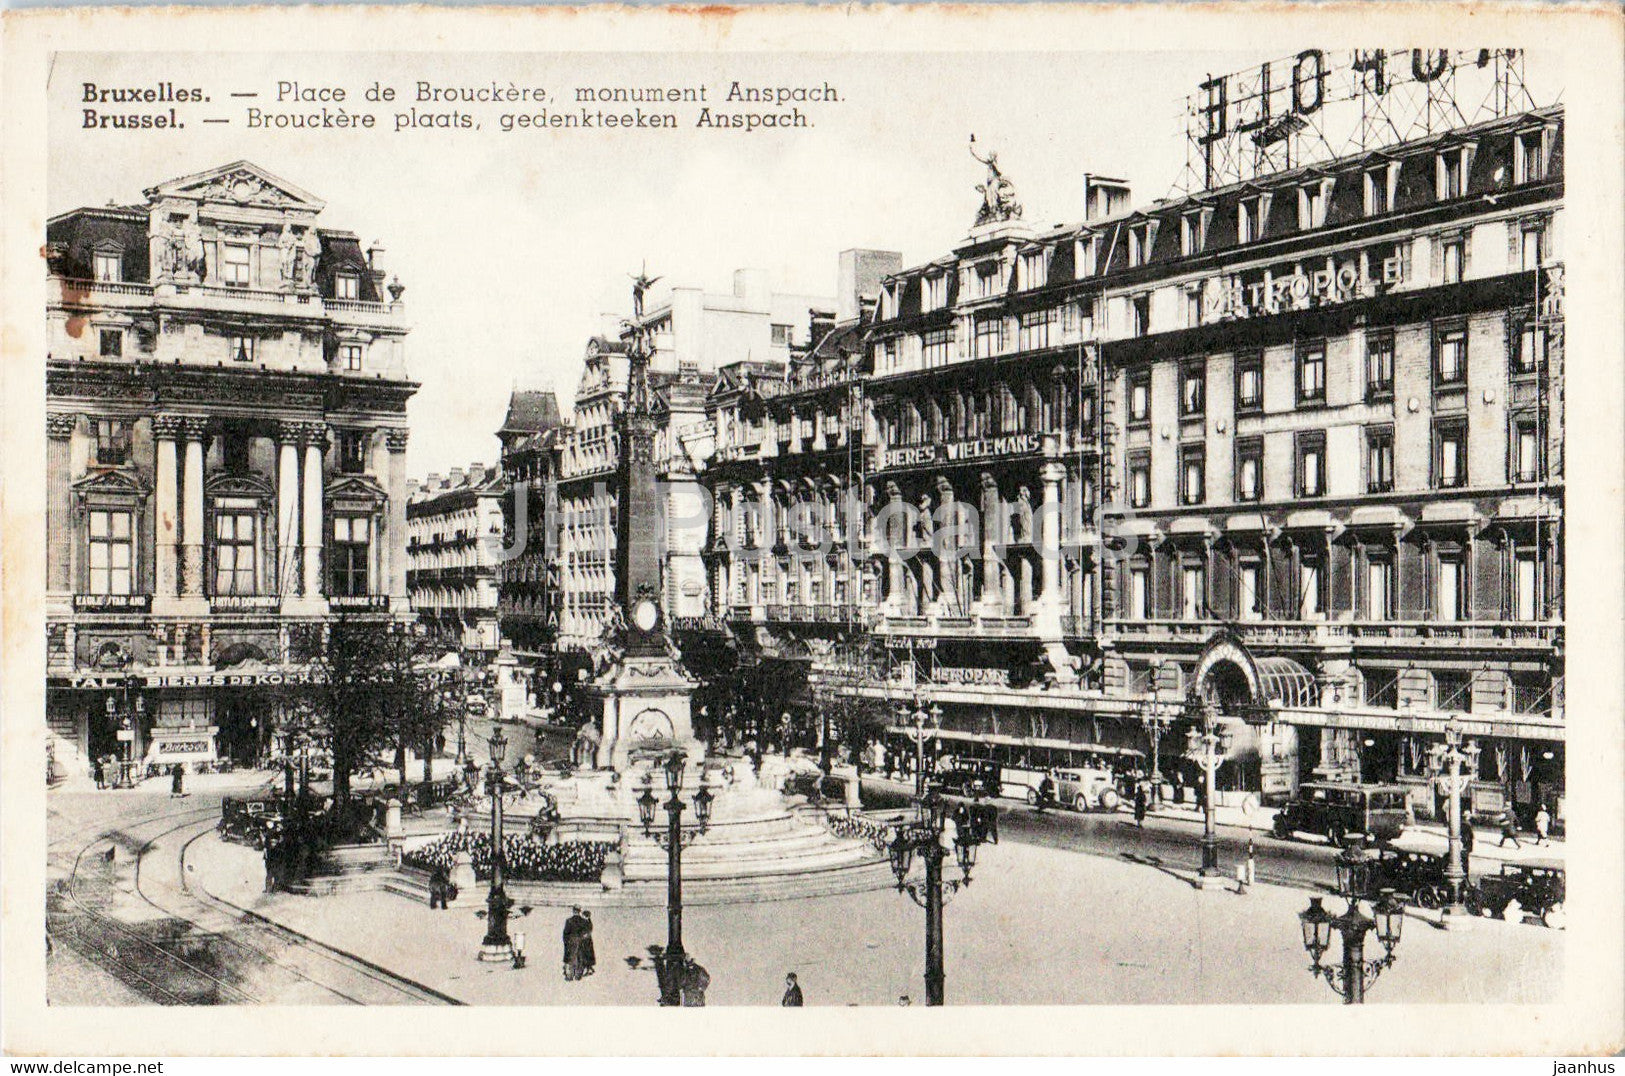 Bruxelles - Brussels - Place de Brouckere monument Anspach - old postcard - Belgium - unused - JH Postcards